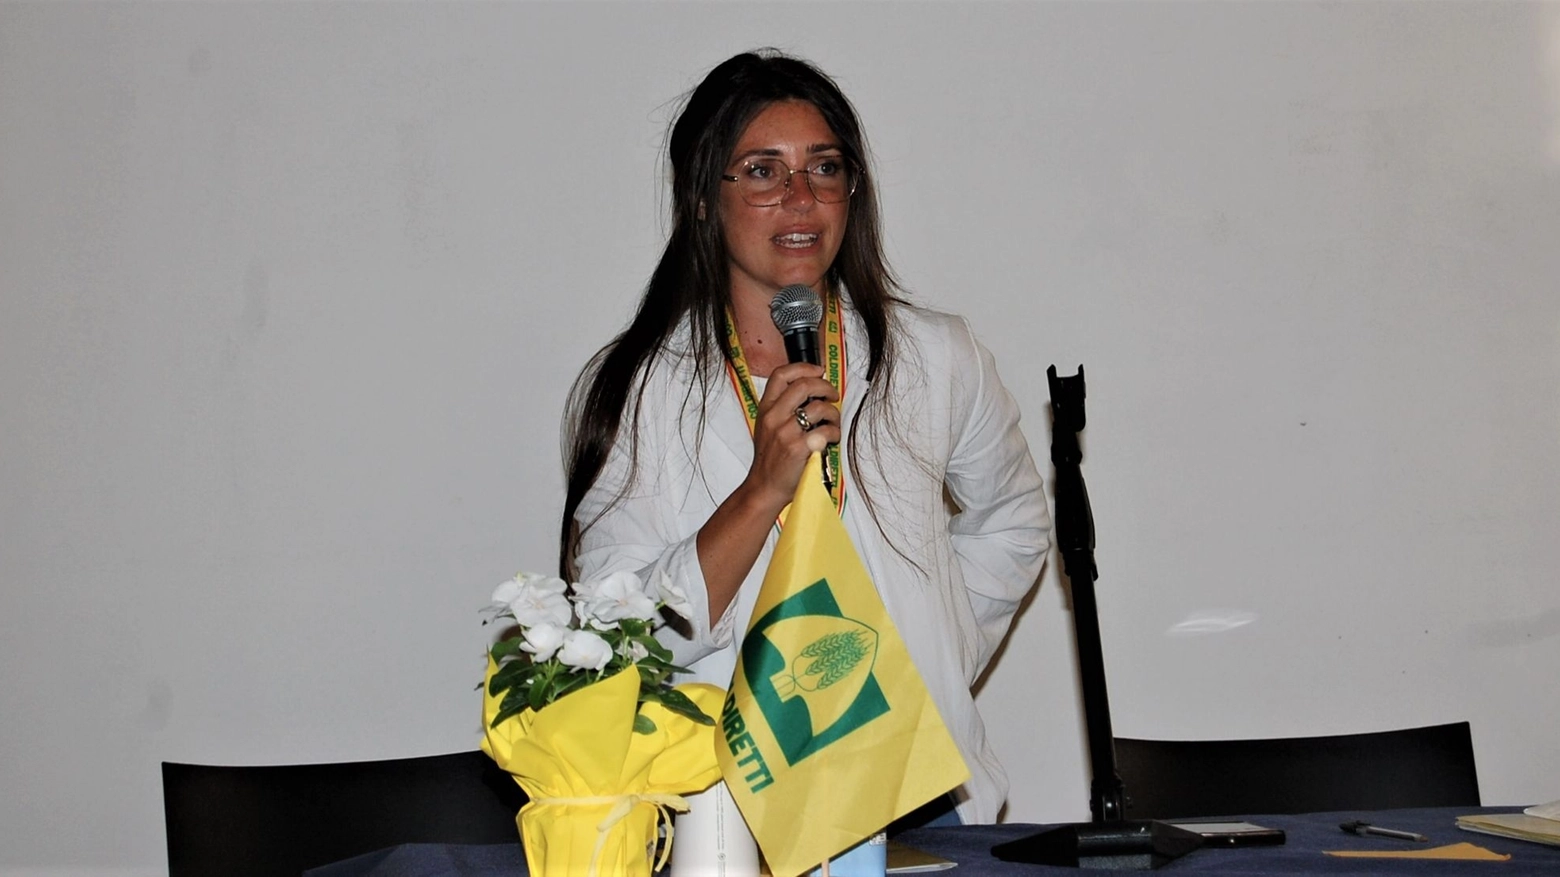 La presidente Coldiretti Marche Maria Letizia Gardoni: "Di fronte al cambiamento climatico, necessario investire su strumenti utili all'adattamento"